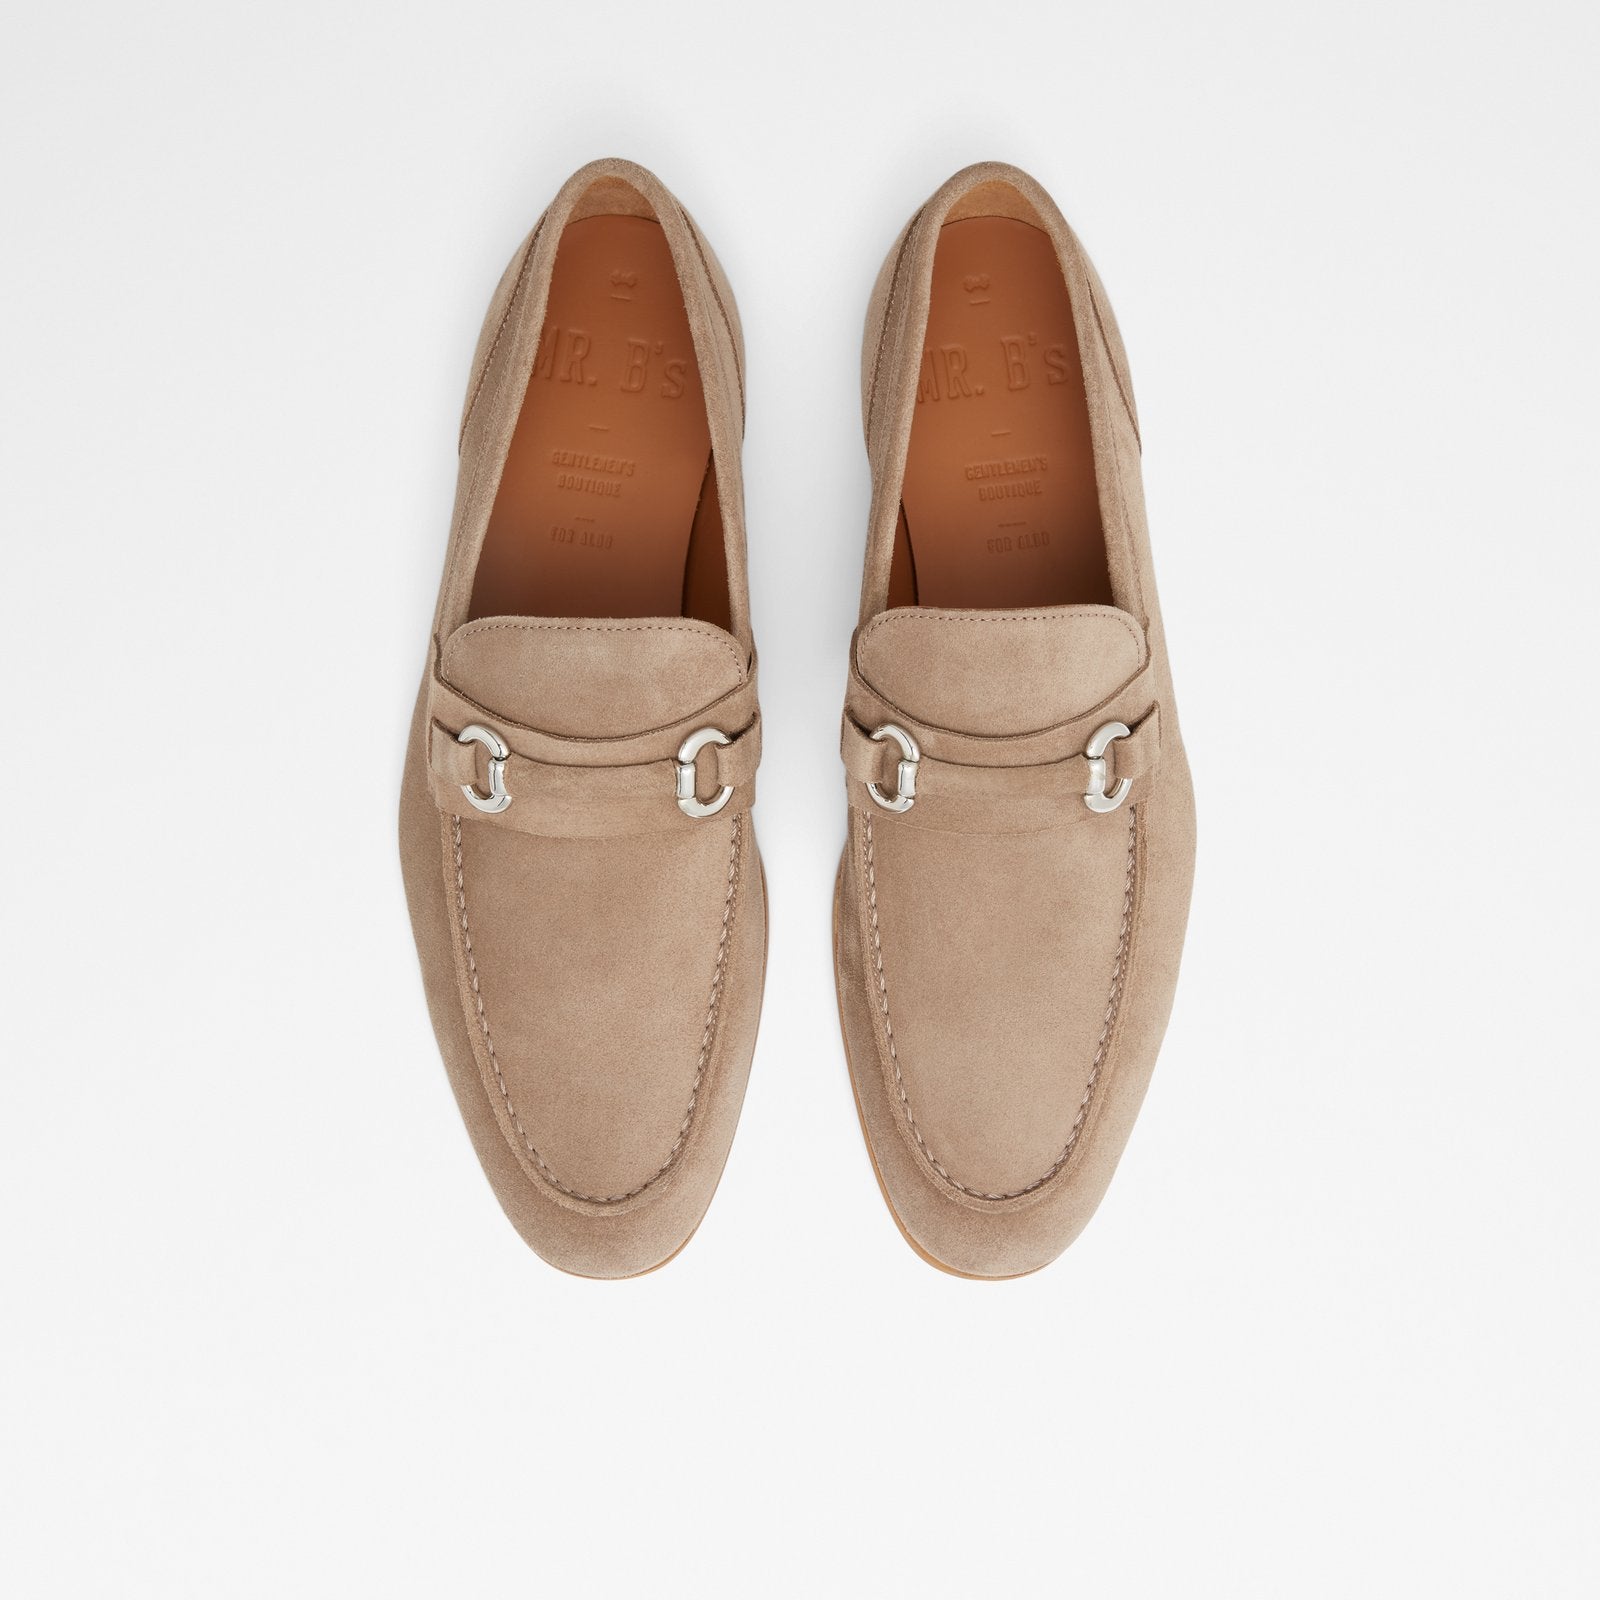 Violettes Men Shoes - Brown - ALDO KSA